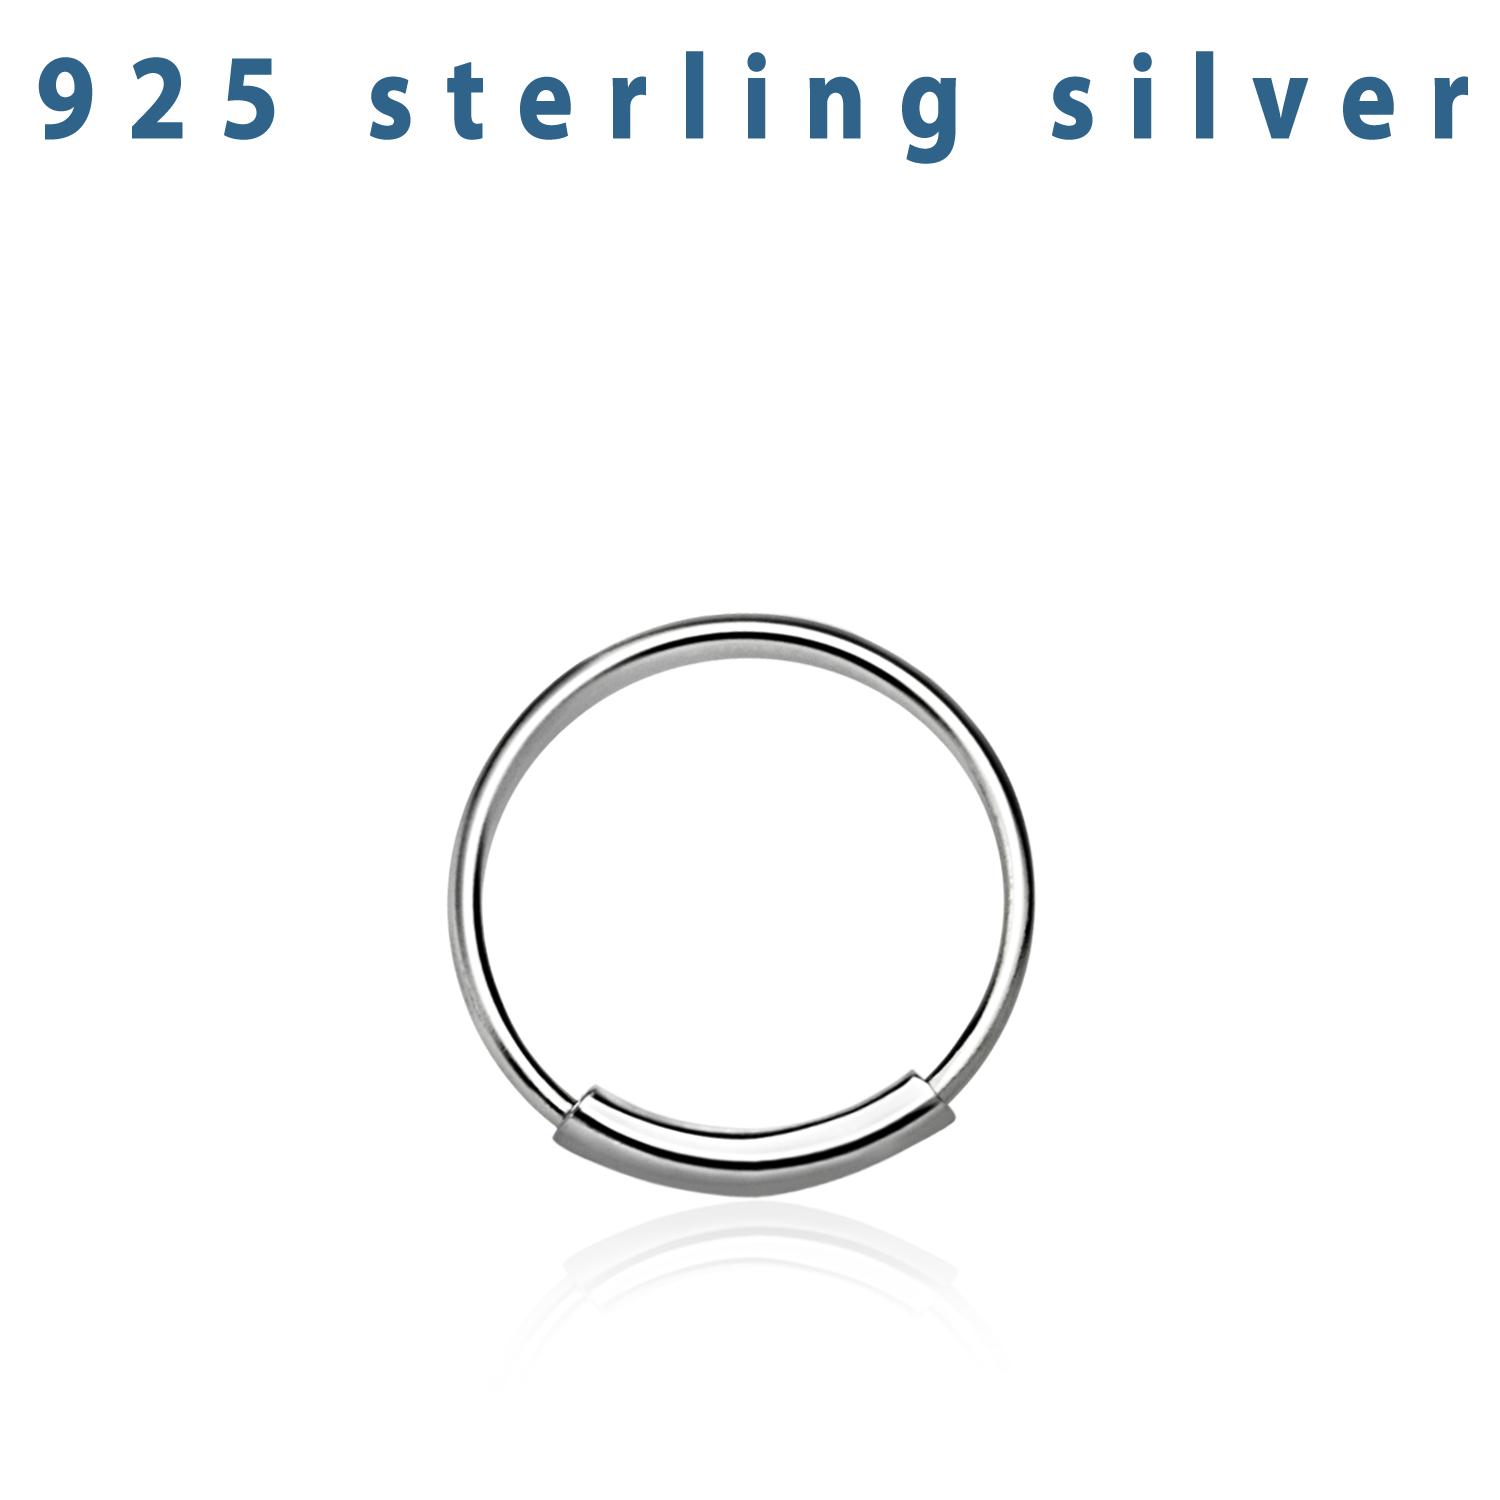 Näsring / sömlös ring i 925 silver 10mm